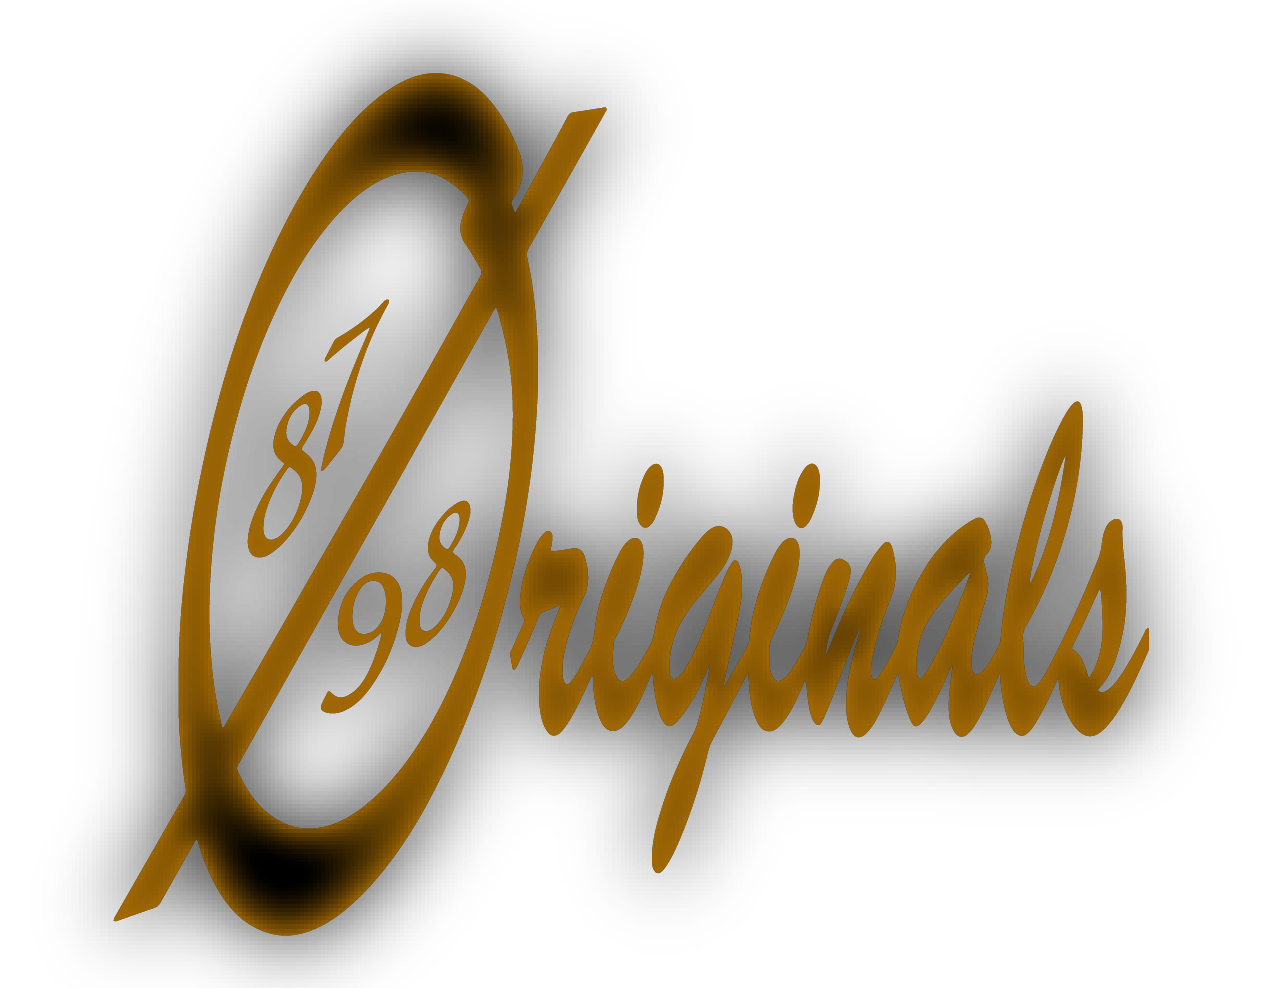 8798 Originals LLC.